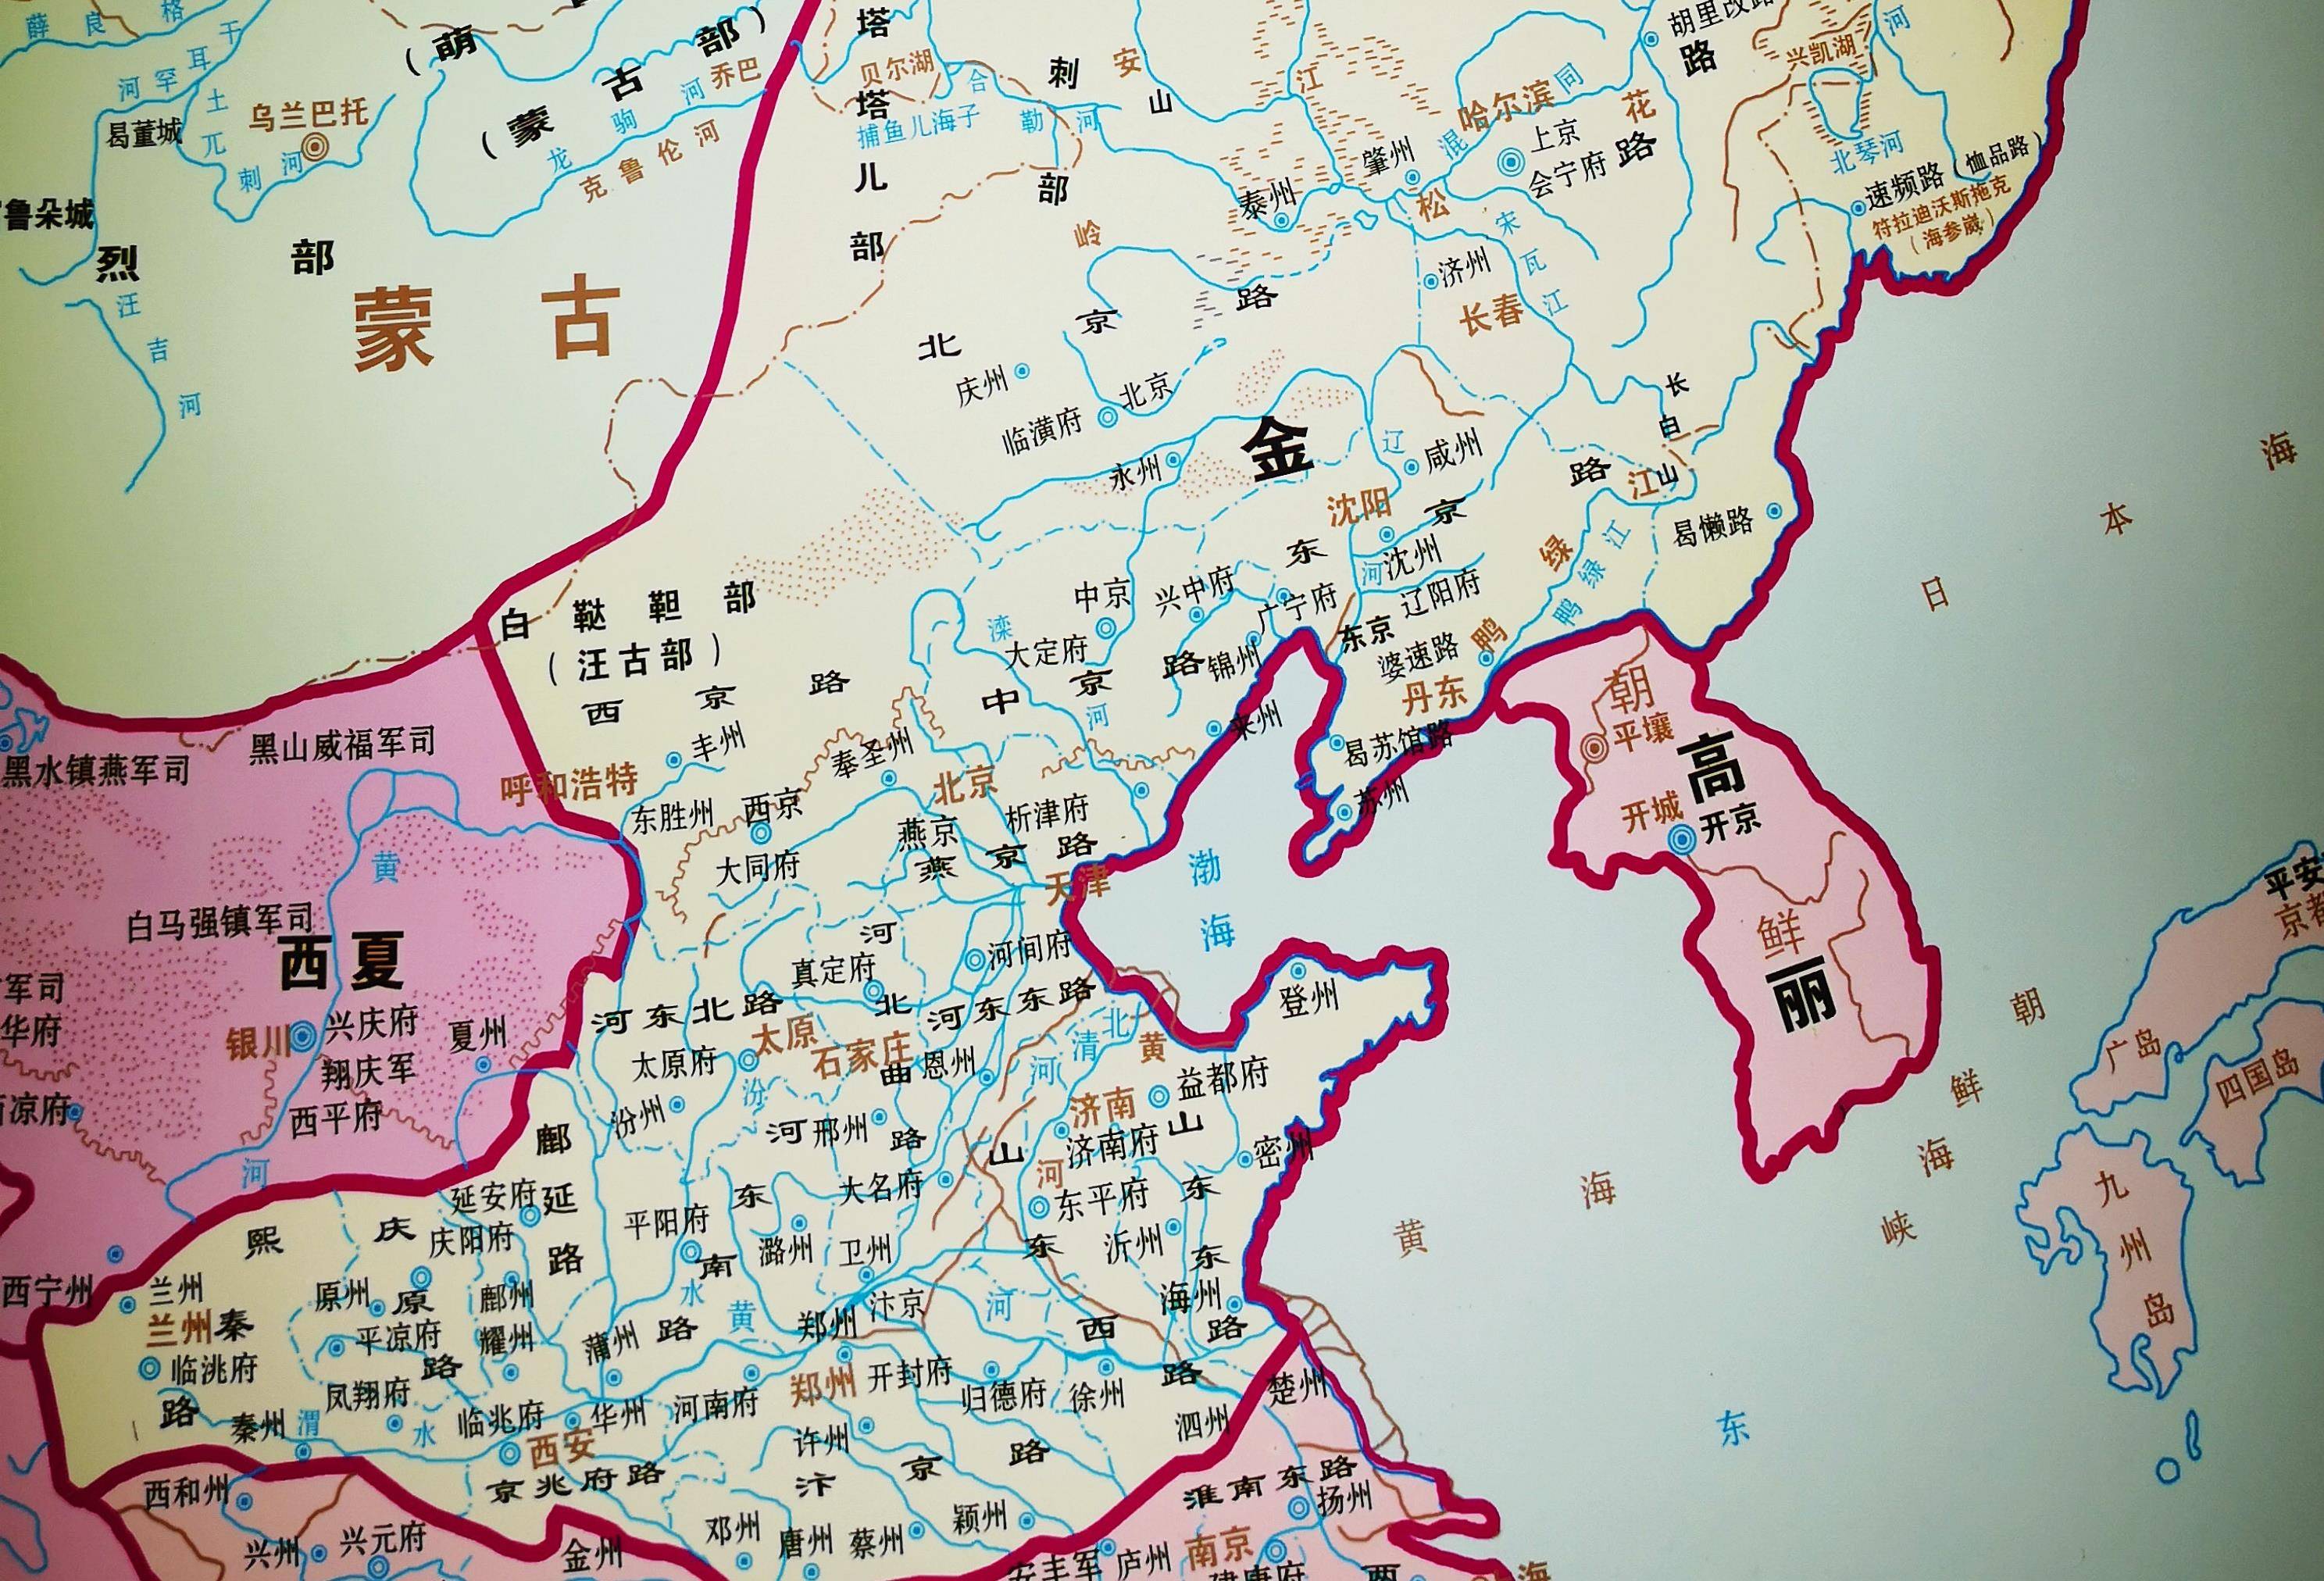 重现历史,中国少数民族王朝金朝在北京建立的金陵遗址景象探秘(上集)